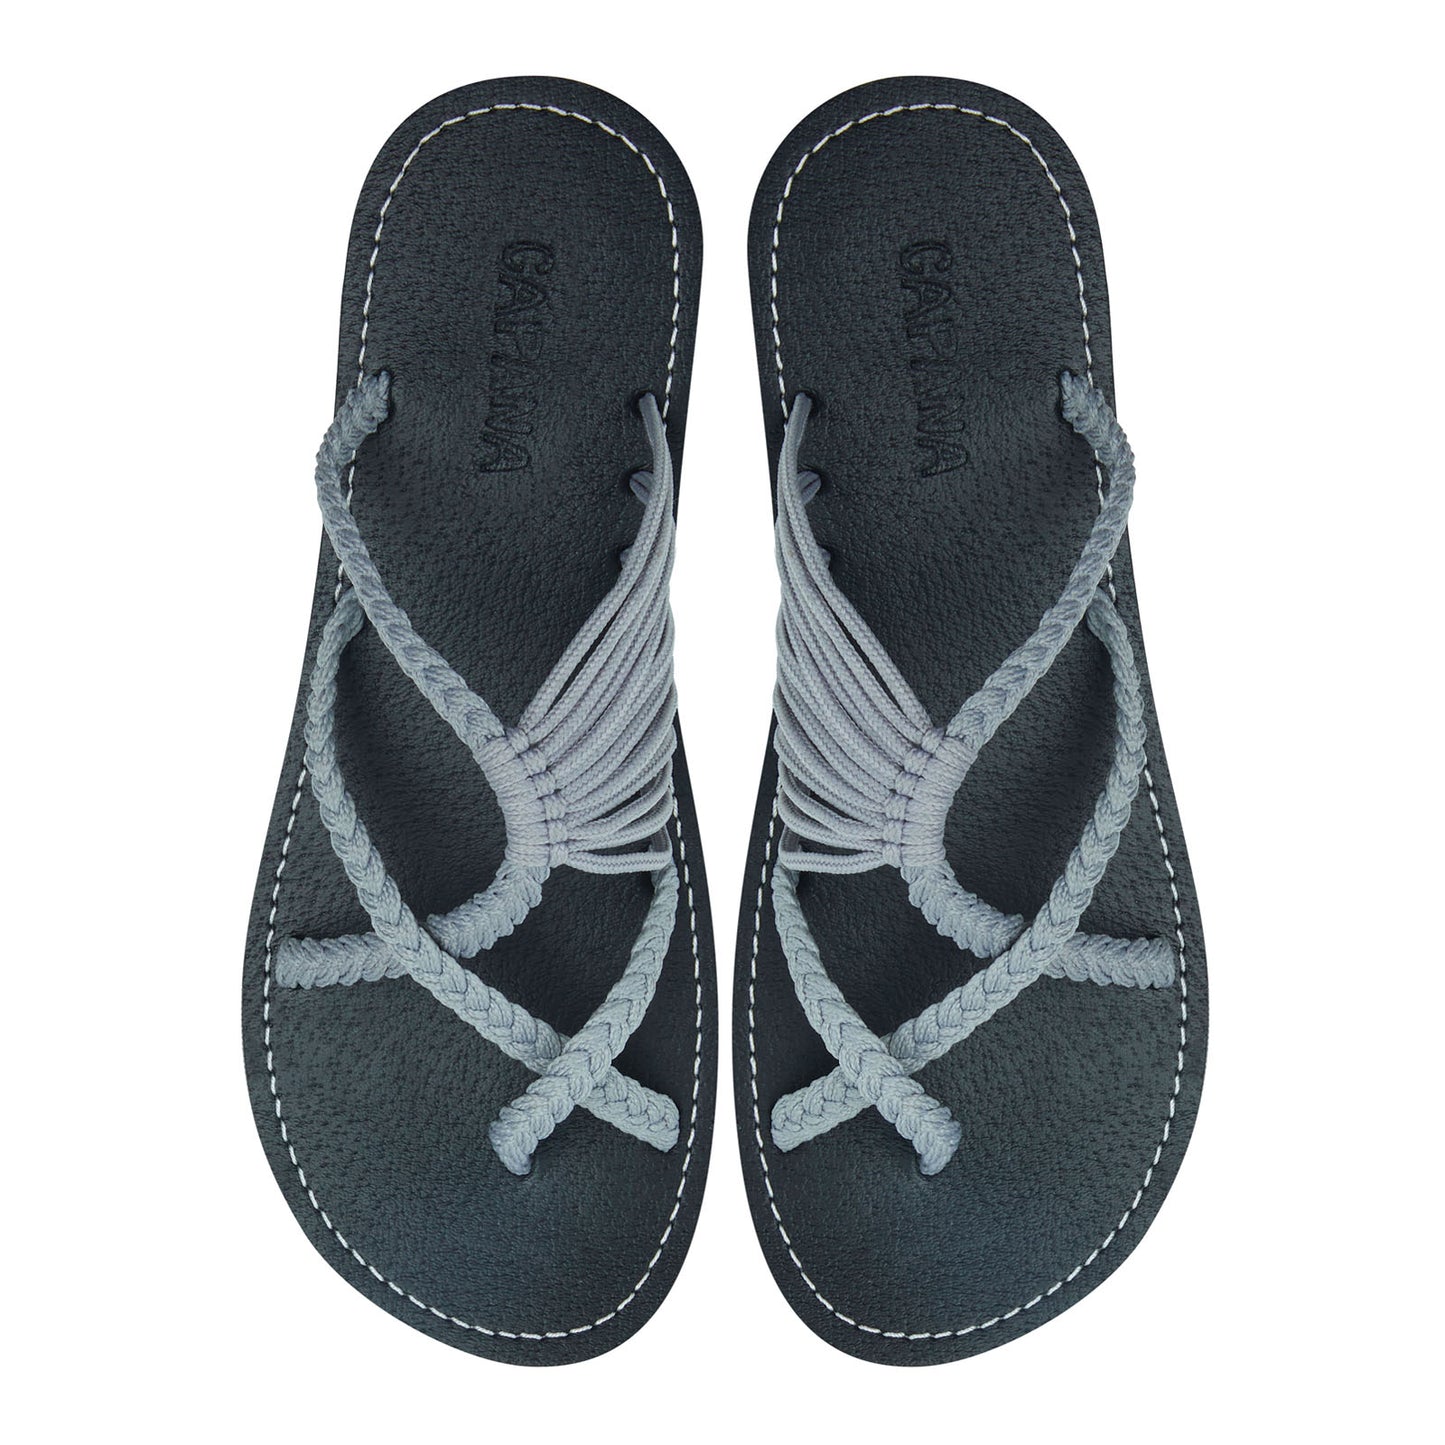 Oceanbliss Light Gray Rope Sandals Smoke Gray Crisscross design Flat Handmade sandals for women